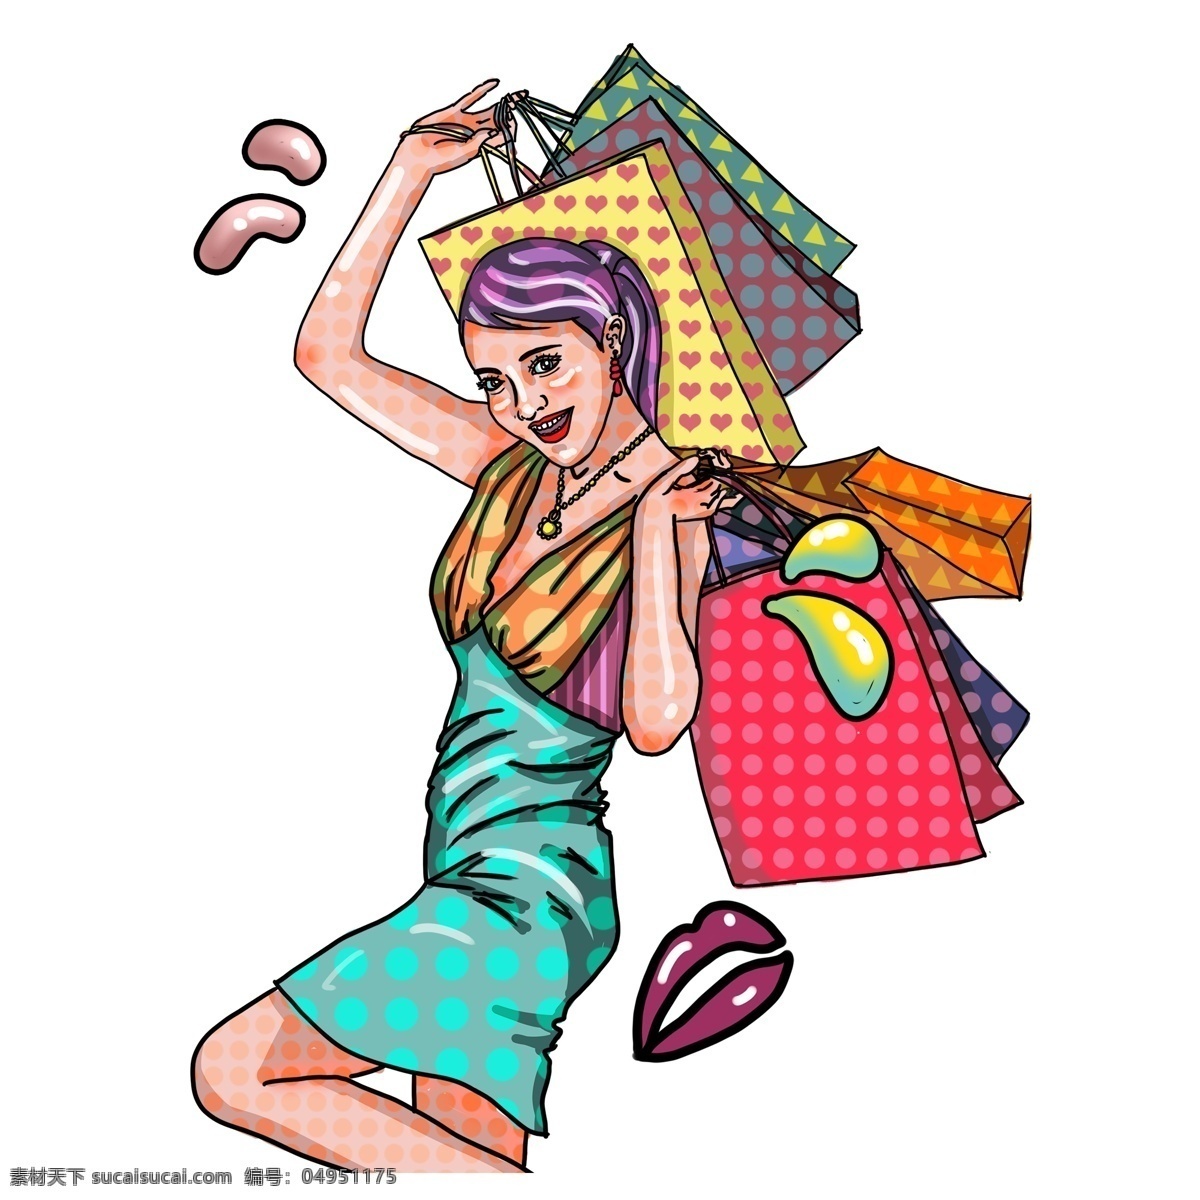 波普 风 疯狂 购物 女性人物 插画 周年庆 人物设计 办年货 手绘 波普风 女人